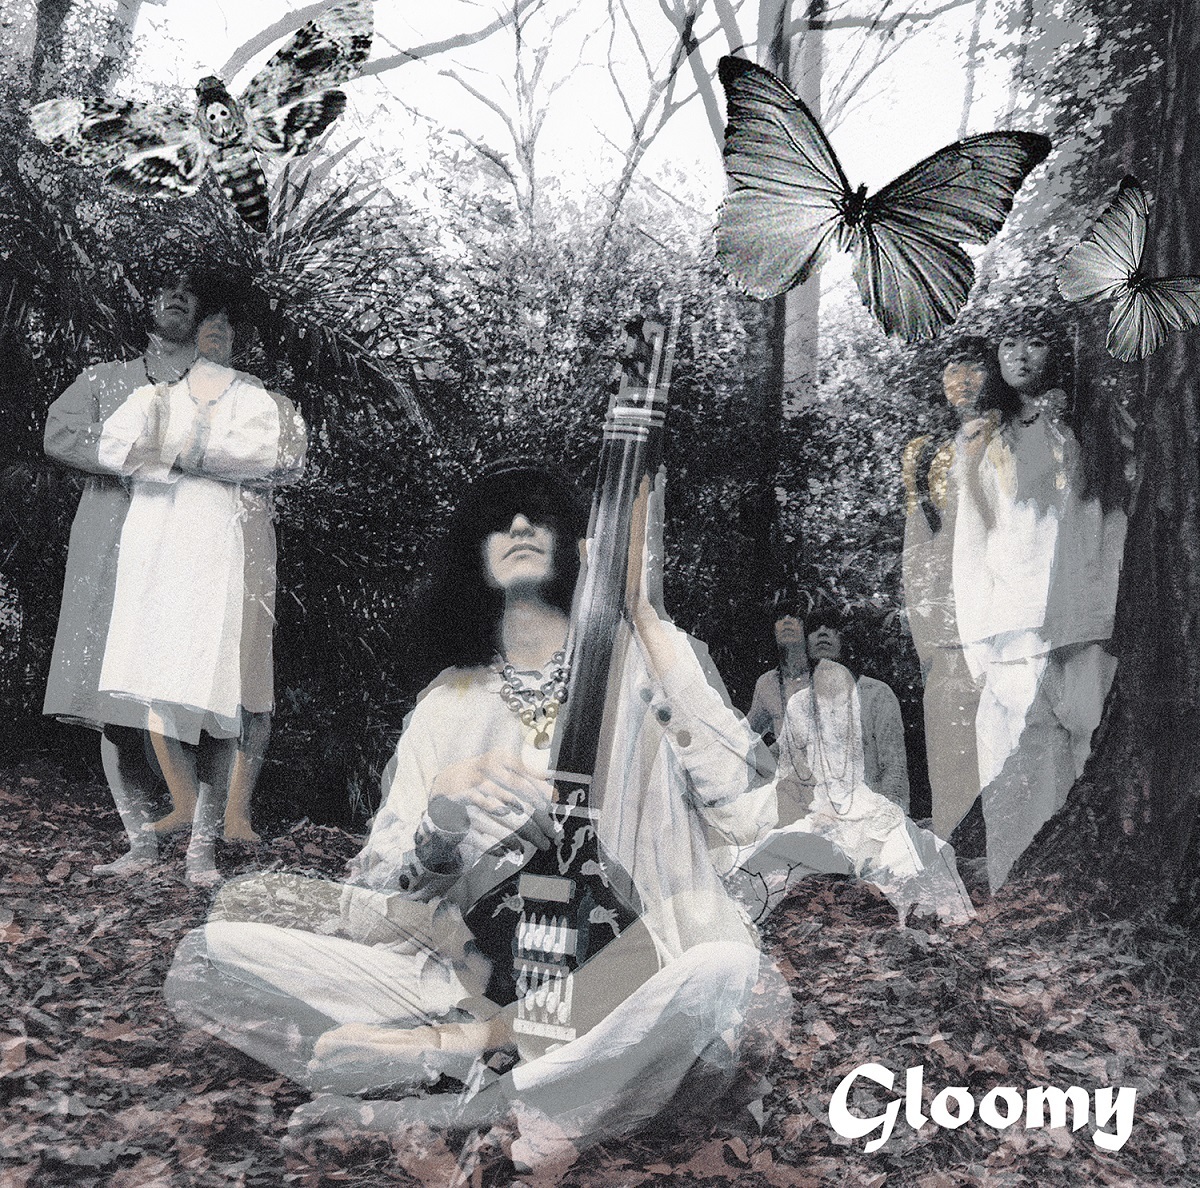 毛皮のマリーズ インディーズ最後のアルバム『Gloomy』発売10周年記念